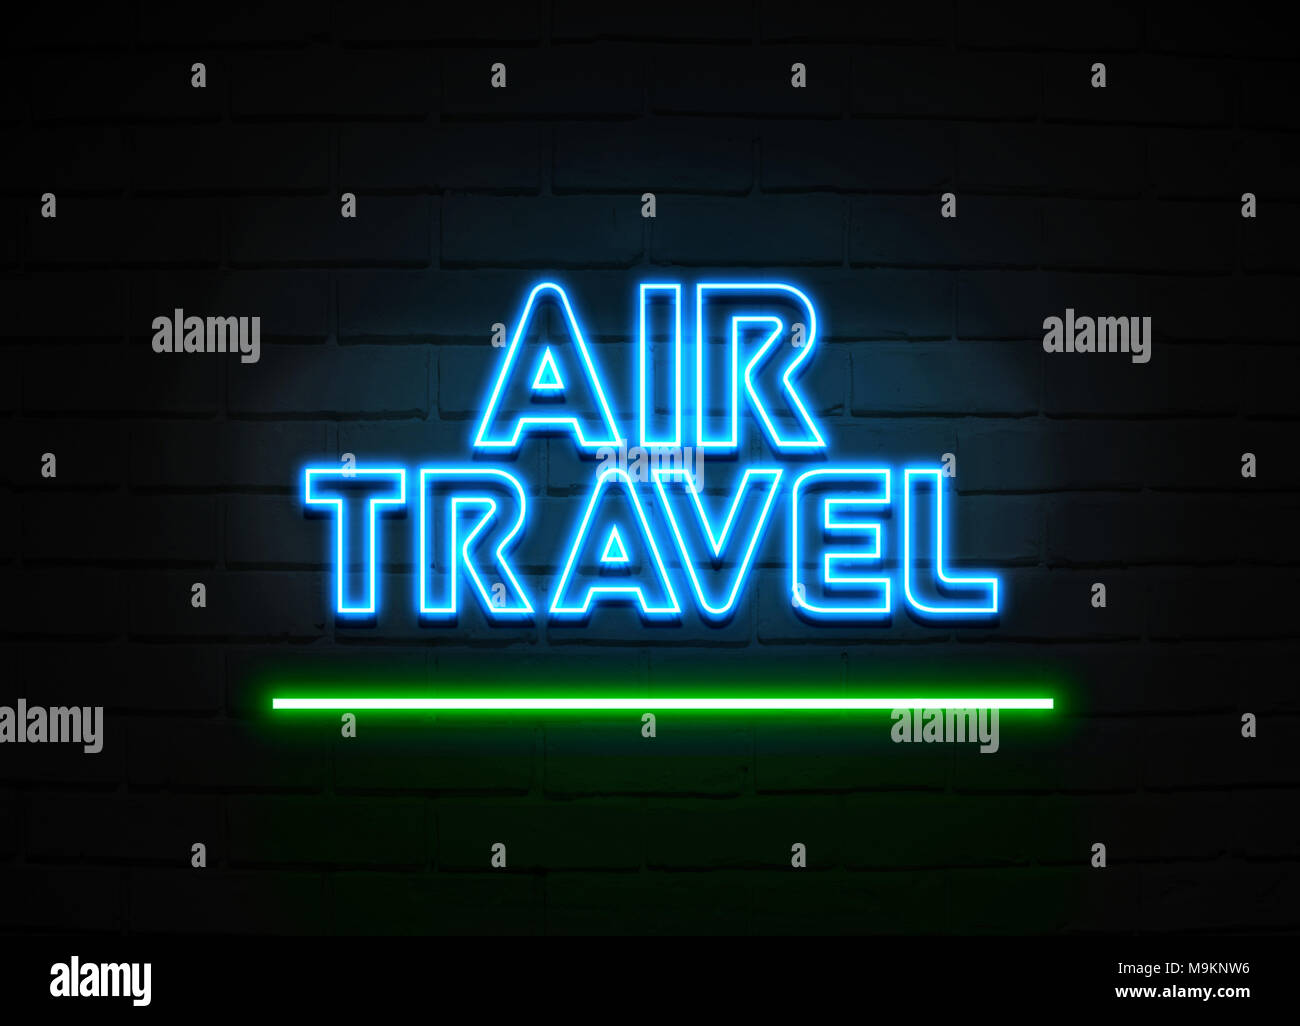 Flugreisen Leuchtreklame - glühende Leuchtreklame auf brickwall Wand - 3D-Royalty Free Stock Illustration dargestellt. Stockfoto